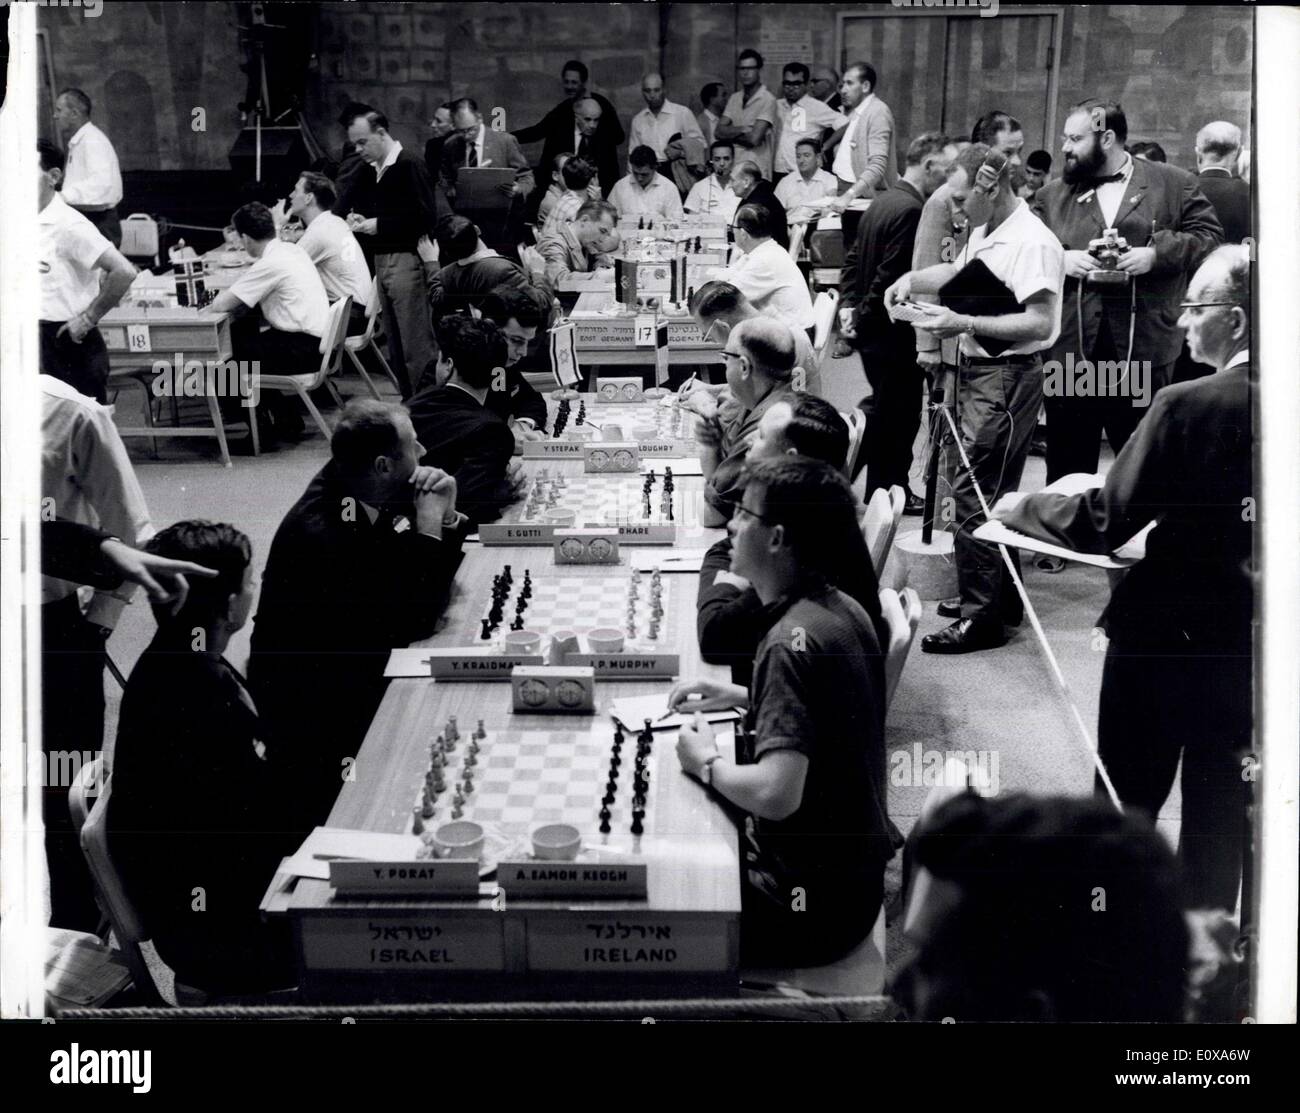 Le 10 novembre 1965 - Ouverture de la 16e Jeux Olympiques d'échecs, - à Tel Aviv - Vue générale de l'concurrents d'Isranel par rapport à leurs concurrents d'Irlande - Contraste pendant le 16e Jeux Olympiques d'échecs - Aujourd'hui détenu à Tel Aviv. Banque D'Images